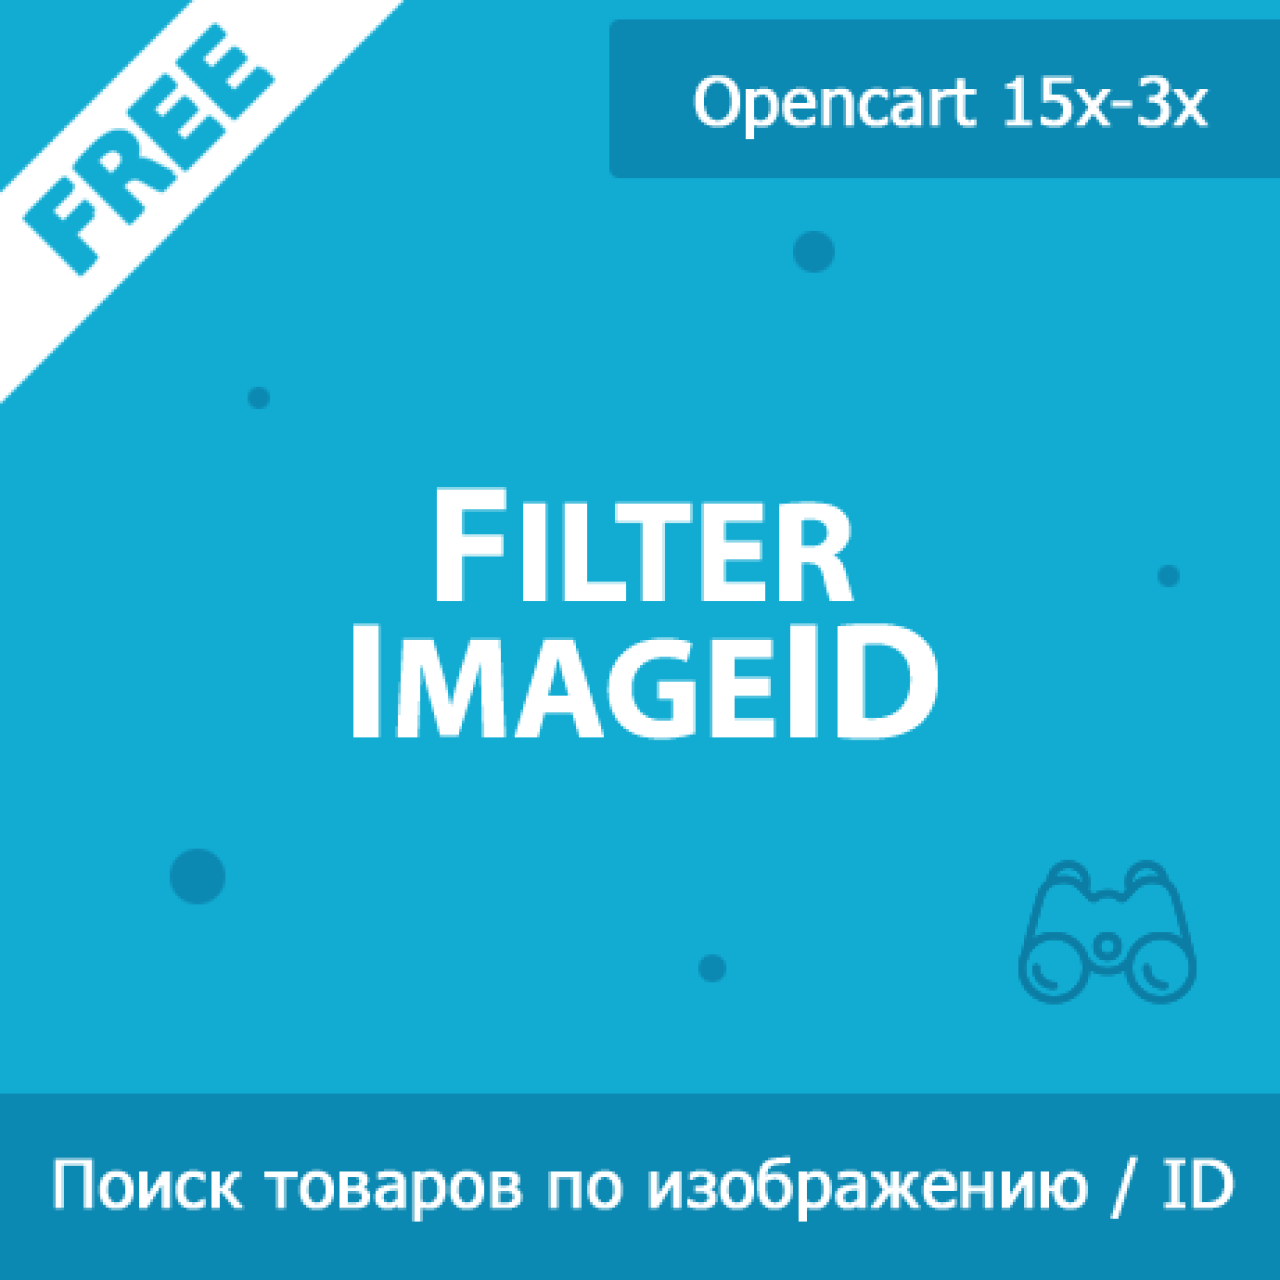 FilterImageID - фильтр товаров по изображениям и ID в админке из категории Админка для CMS OpenCart (ОпенКарт)